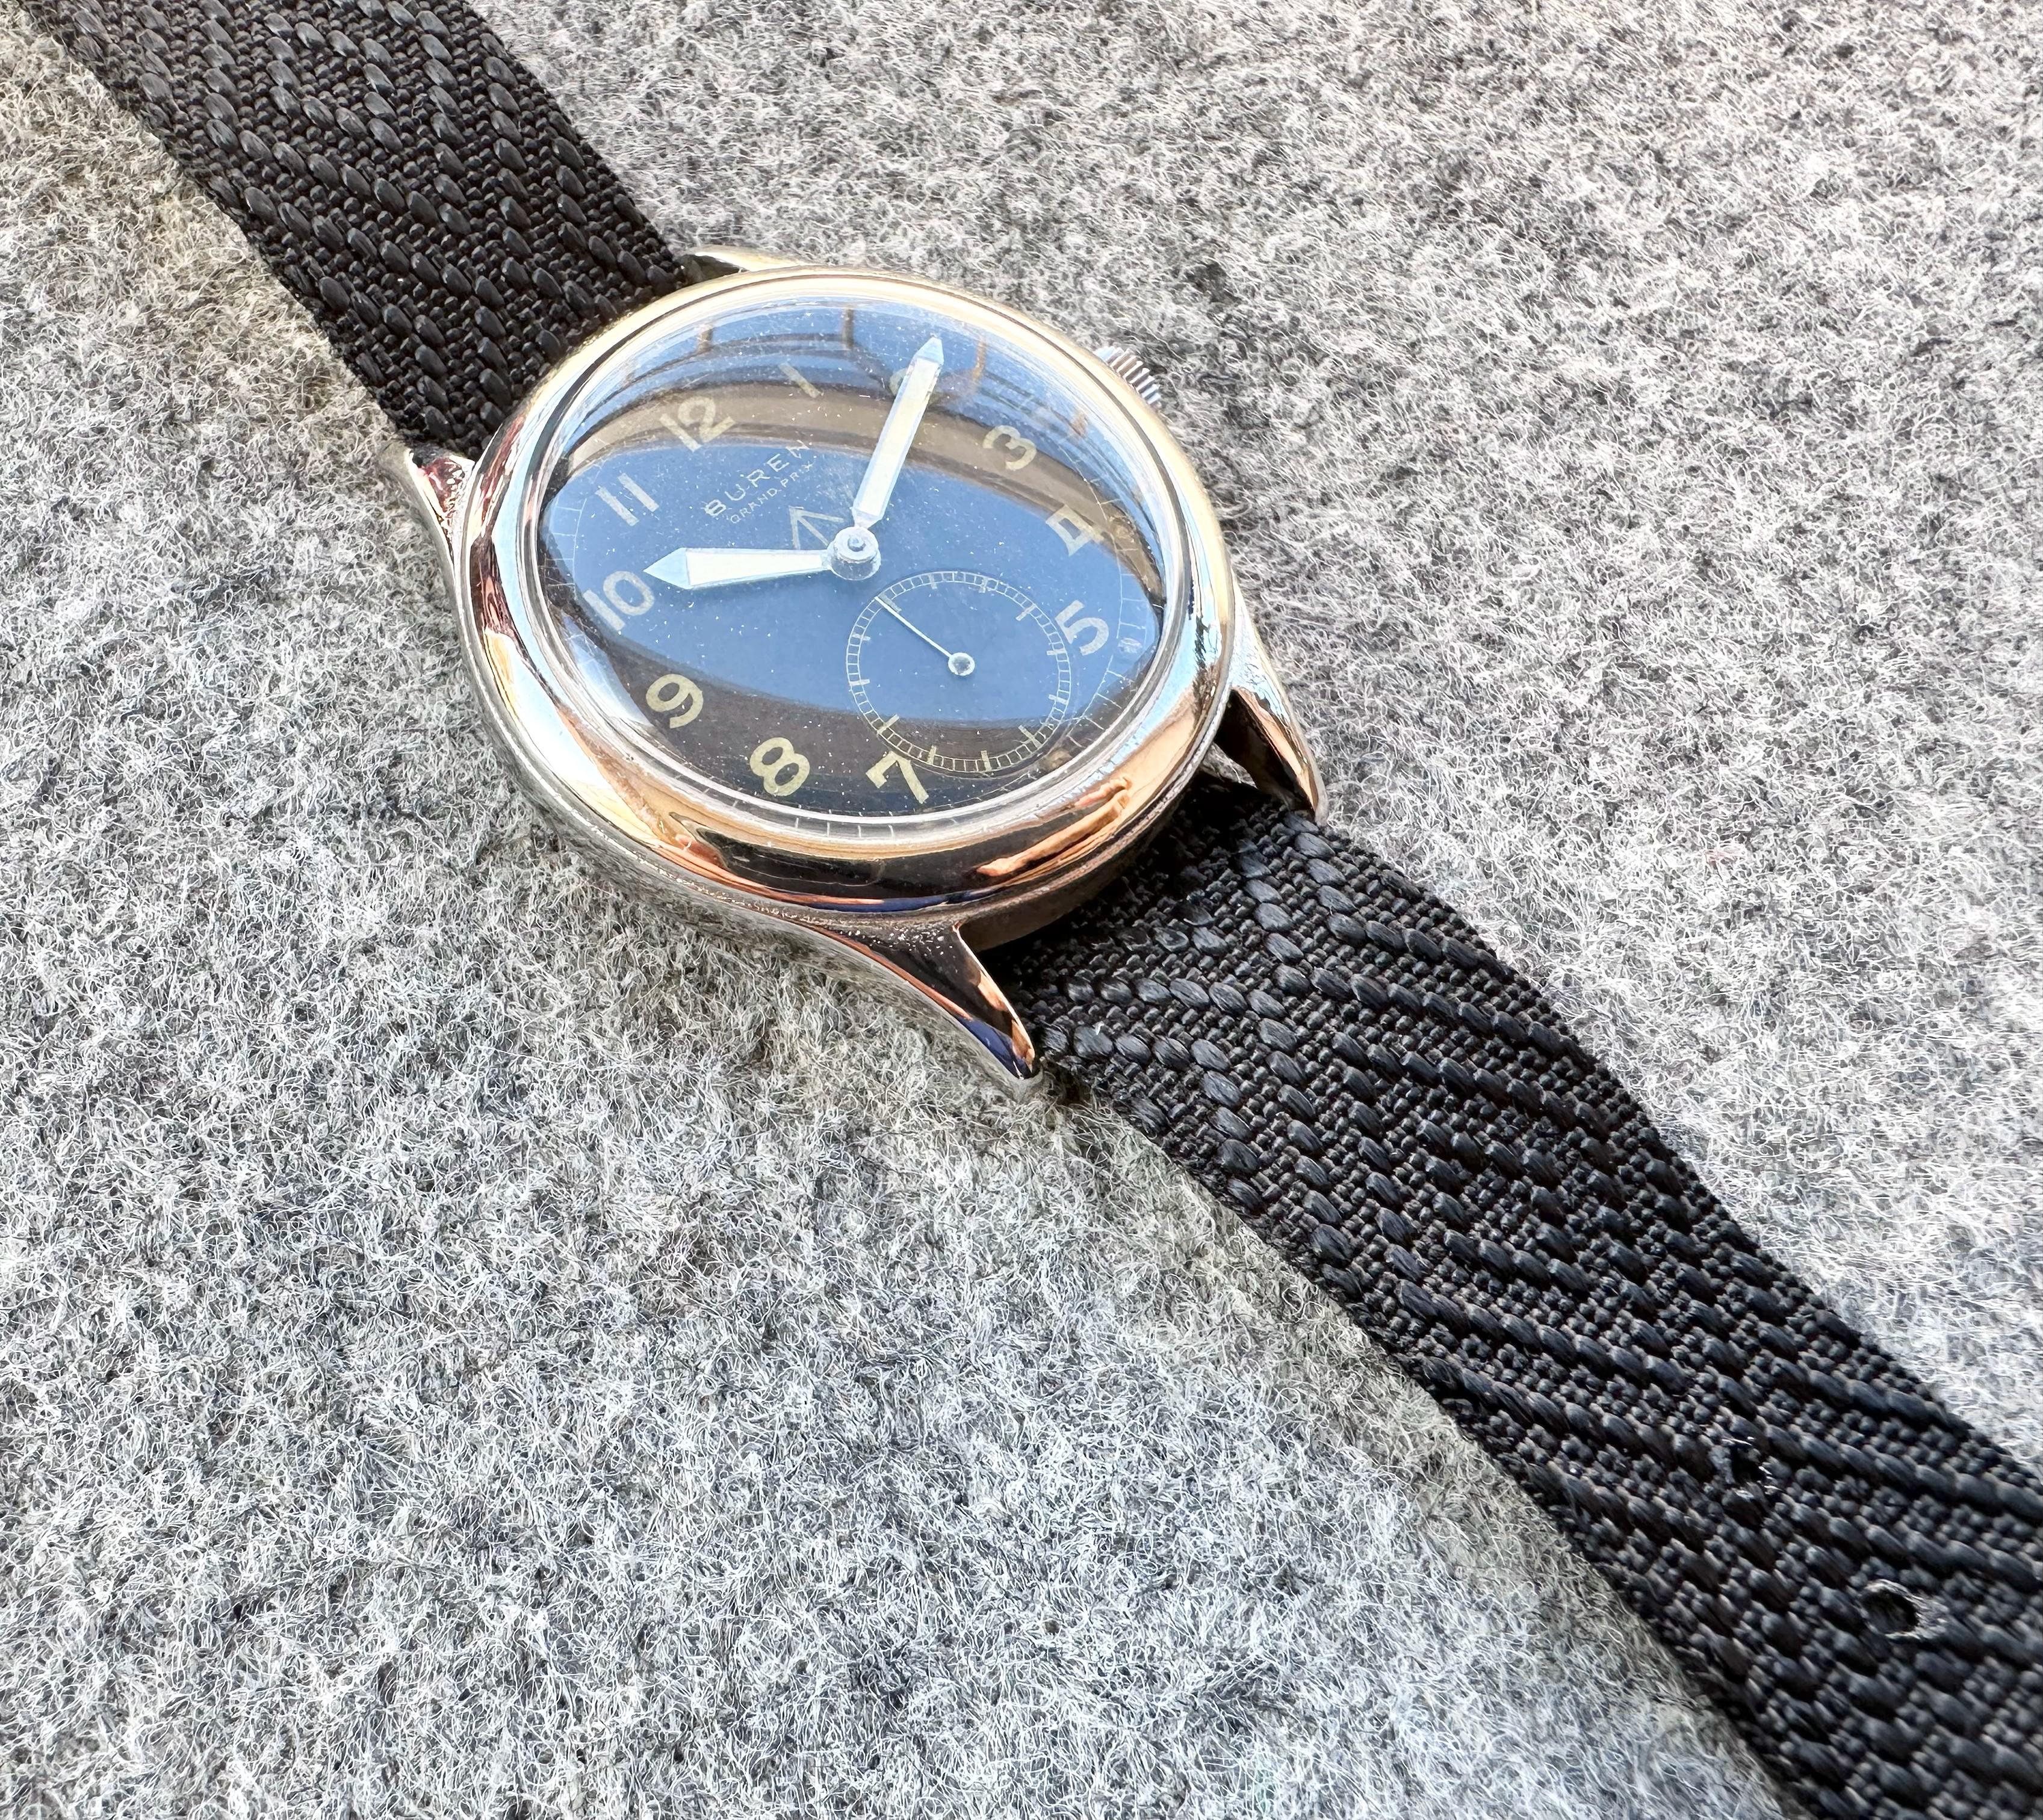 Description de la montre

Marque : Buren

Modèle : 